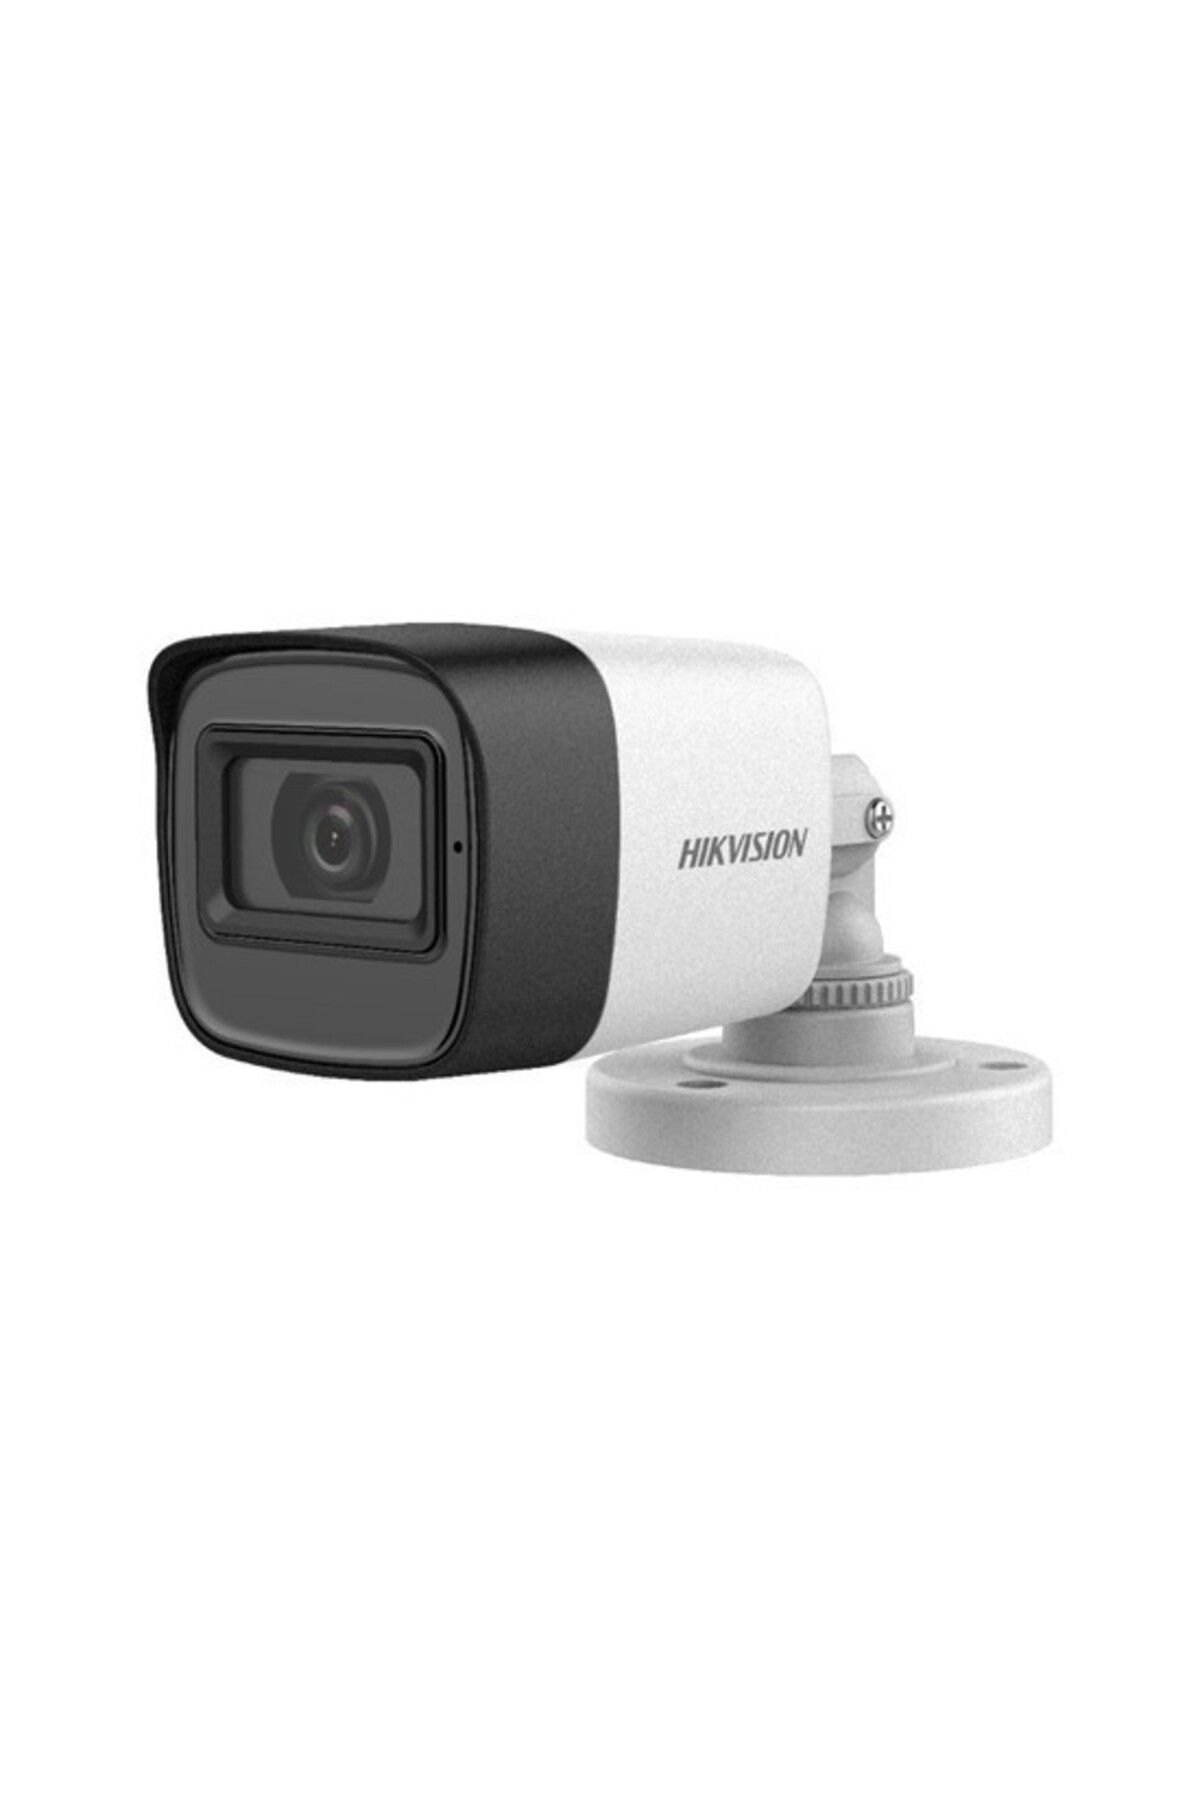 Hikvision Ds-2ce16d0t-exıf 1080p Mini Ir 30mt Metal Bullet Kamera